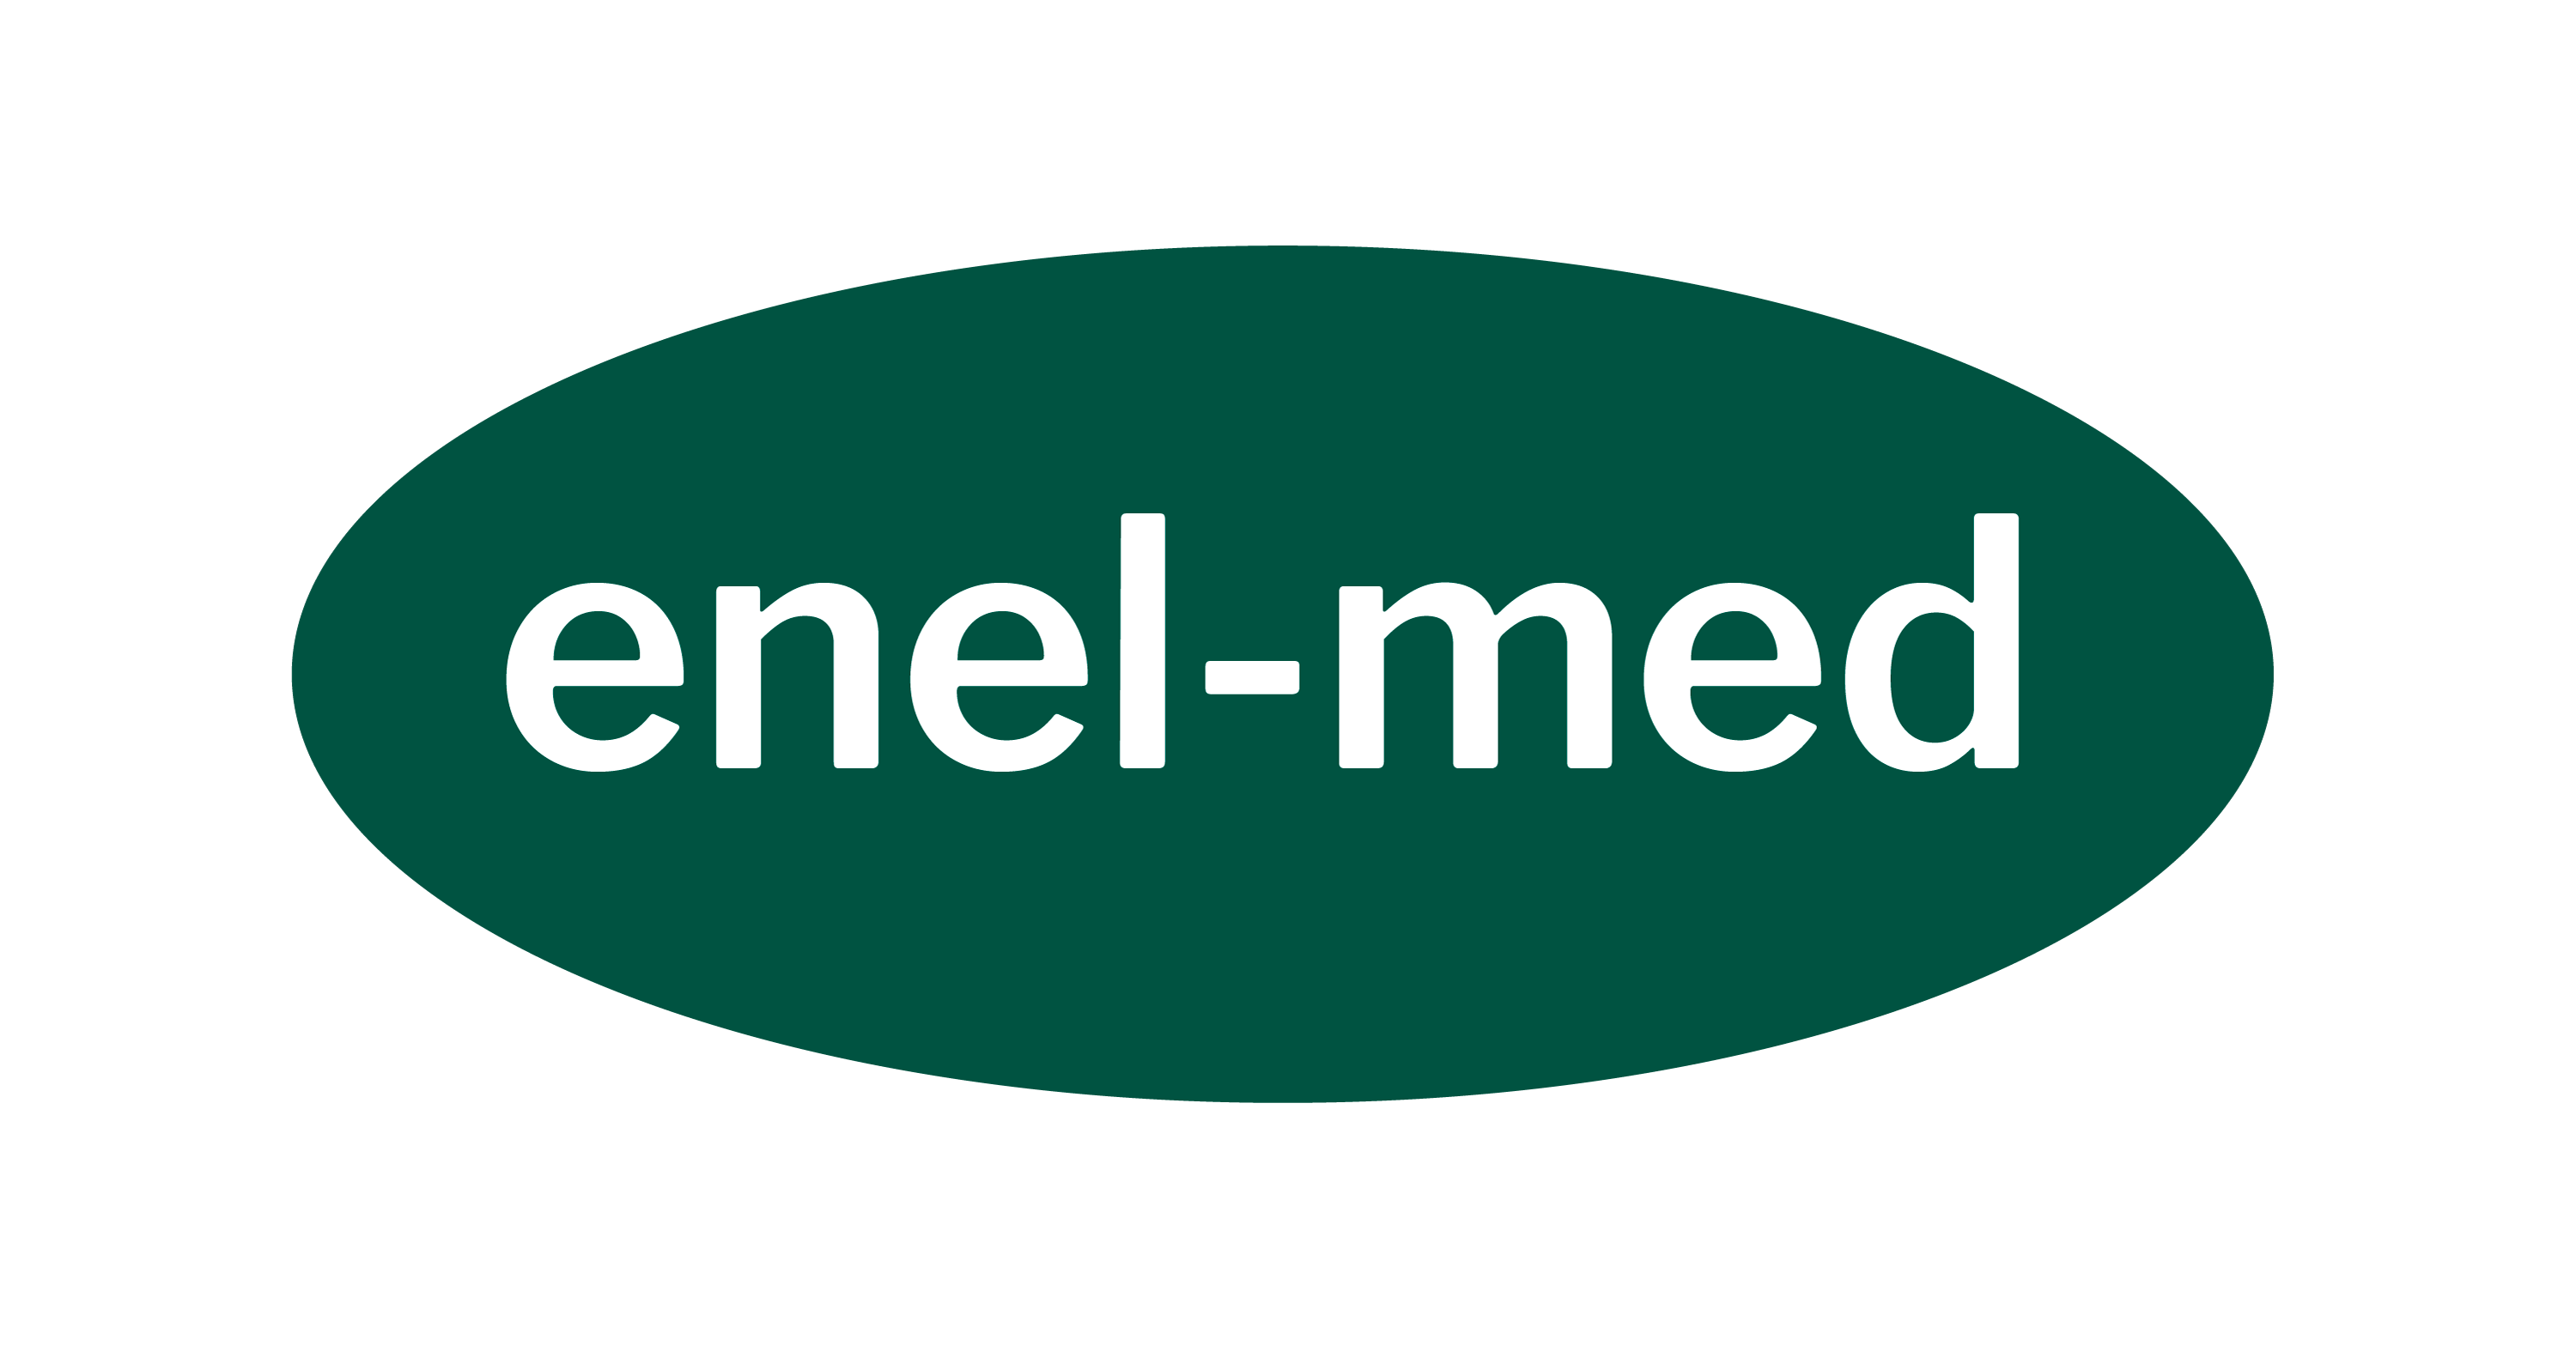 Centrum Medyczne ENEL-MED S.A.